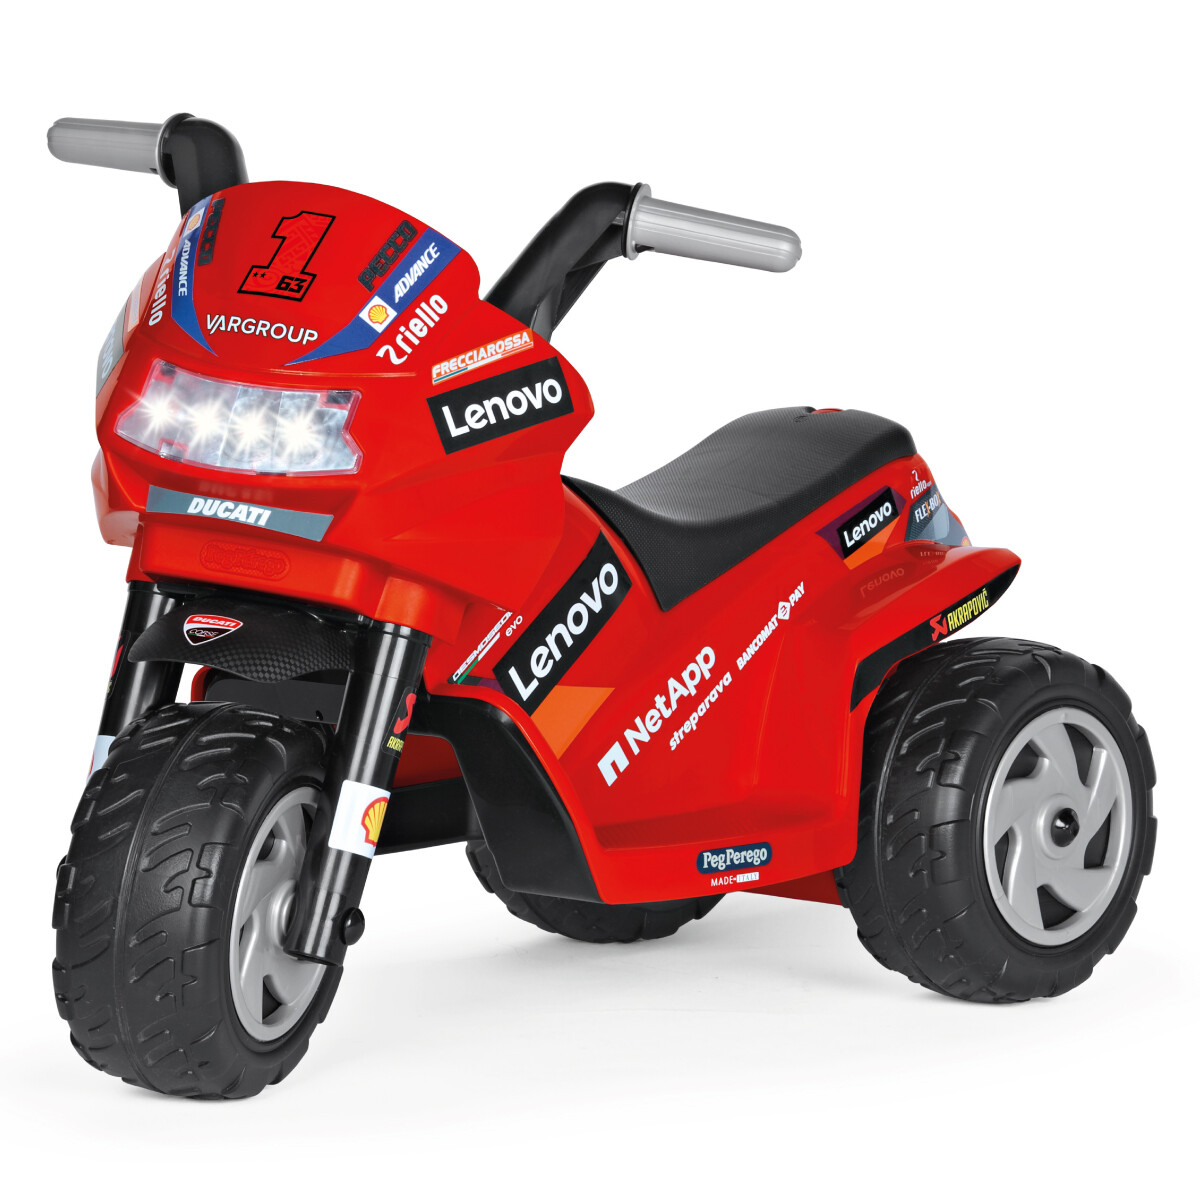 Ducati mini evo, maxi divertimento! la moto elettrica per bambini con luci  e suoni. - Toys Center